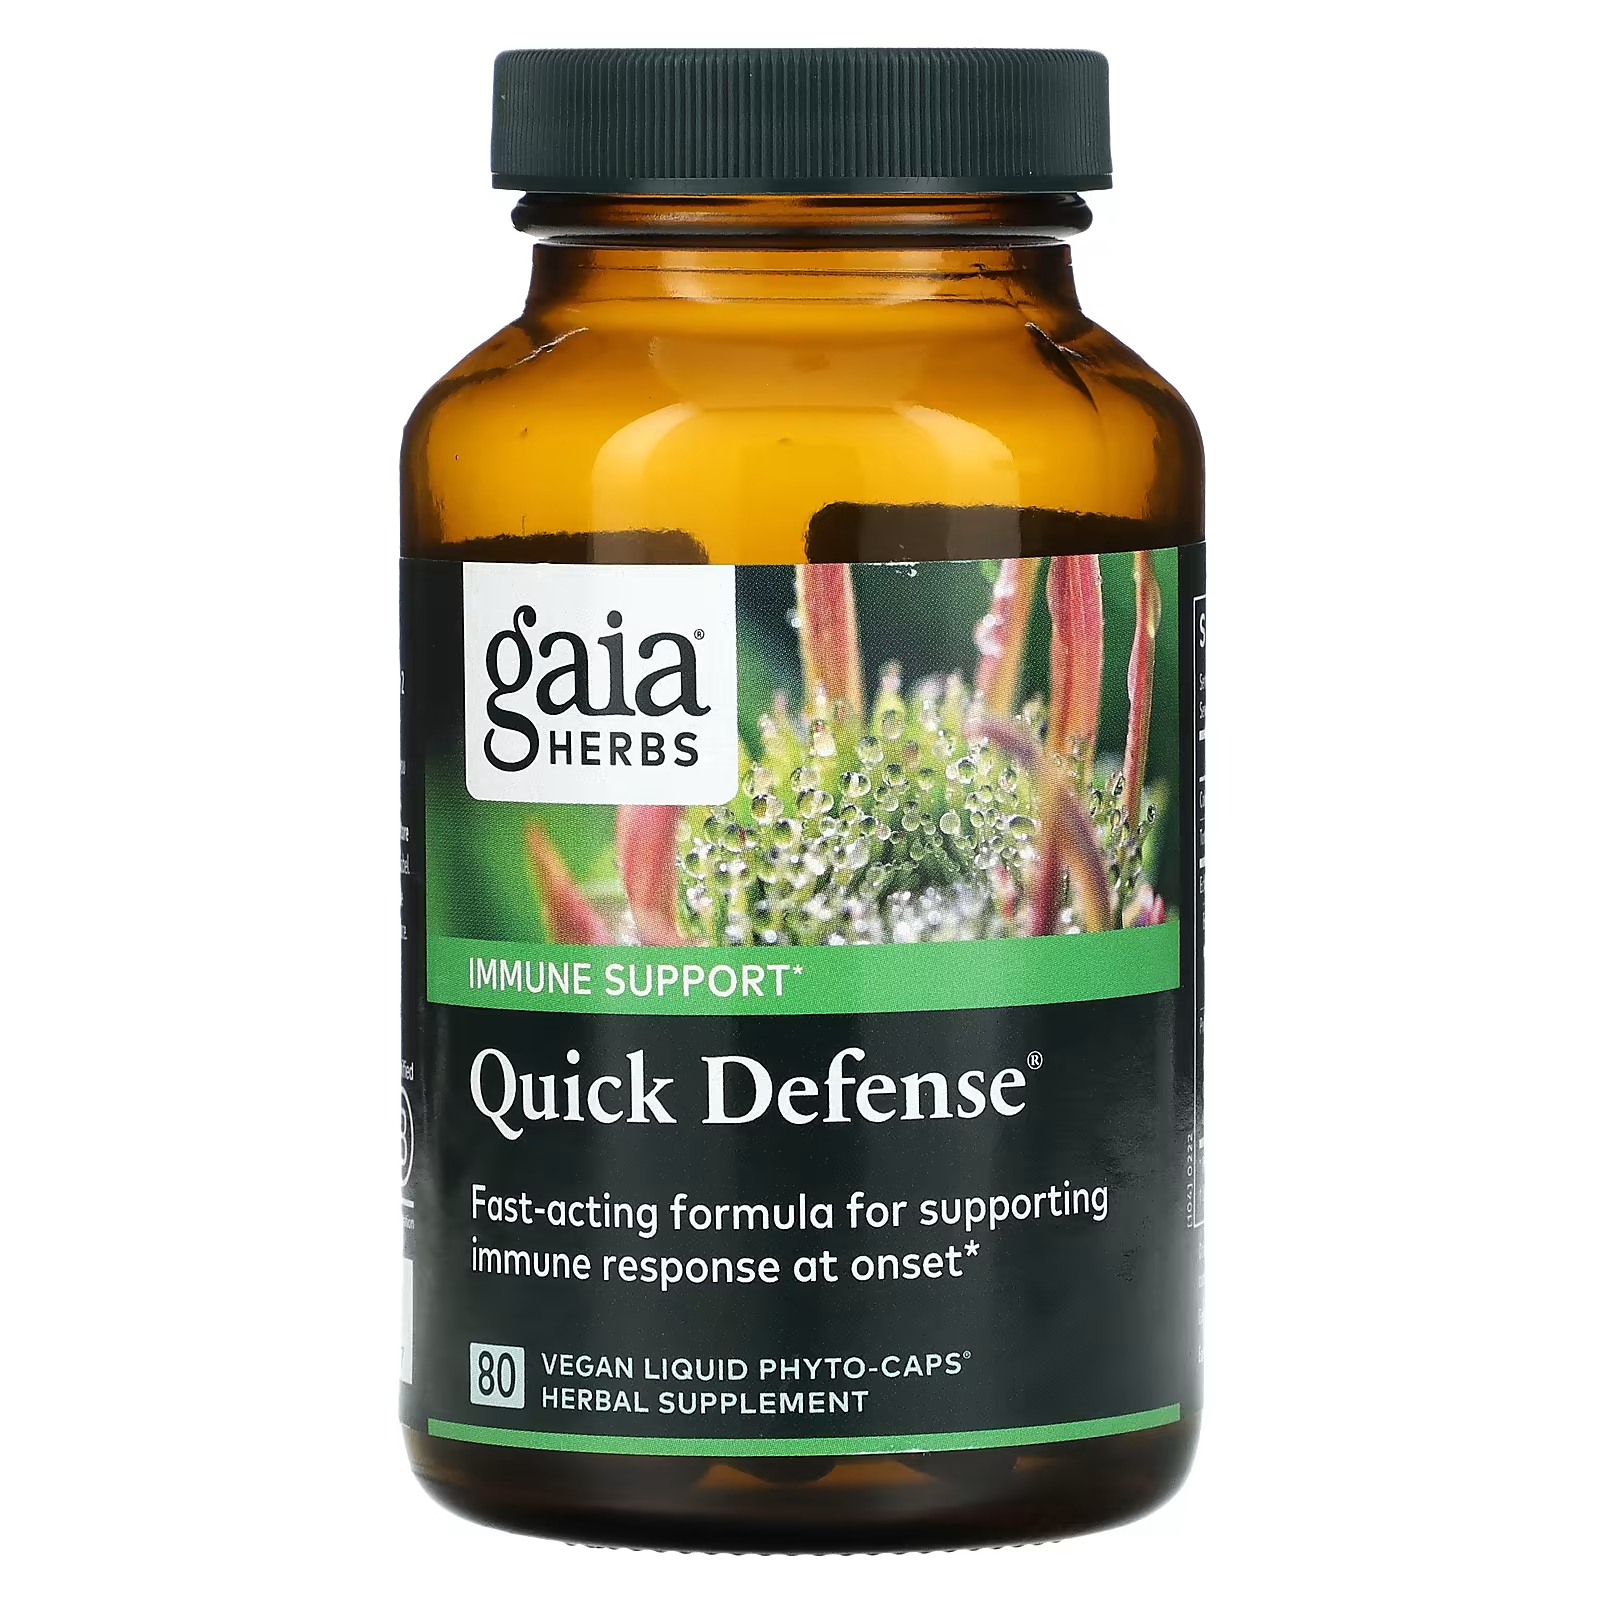 Пищевая добавка Gaia Herbs Quick Defense, 80 веганских жидких фито-капсул gaia herbs эхинацея и желтокорень 60 веганских жидких фито капсул